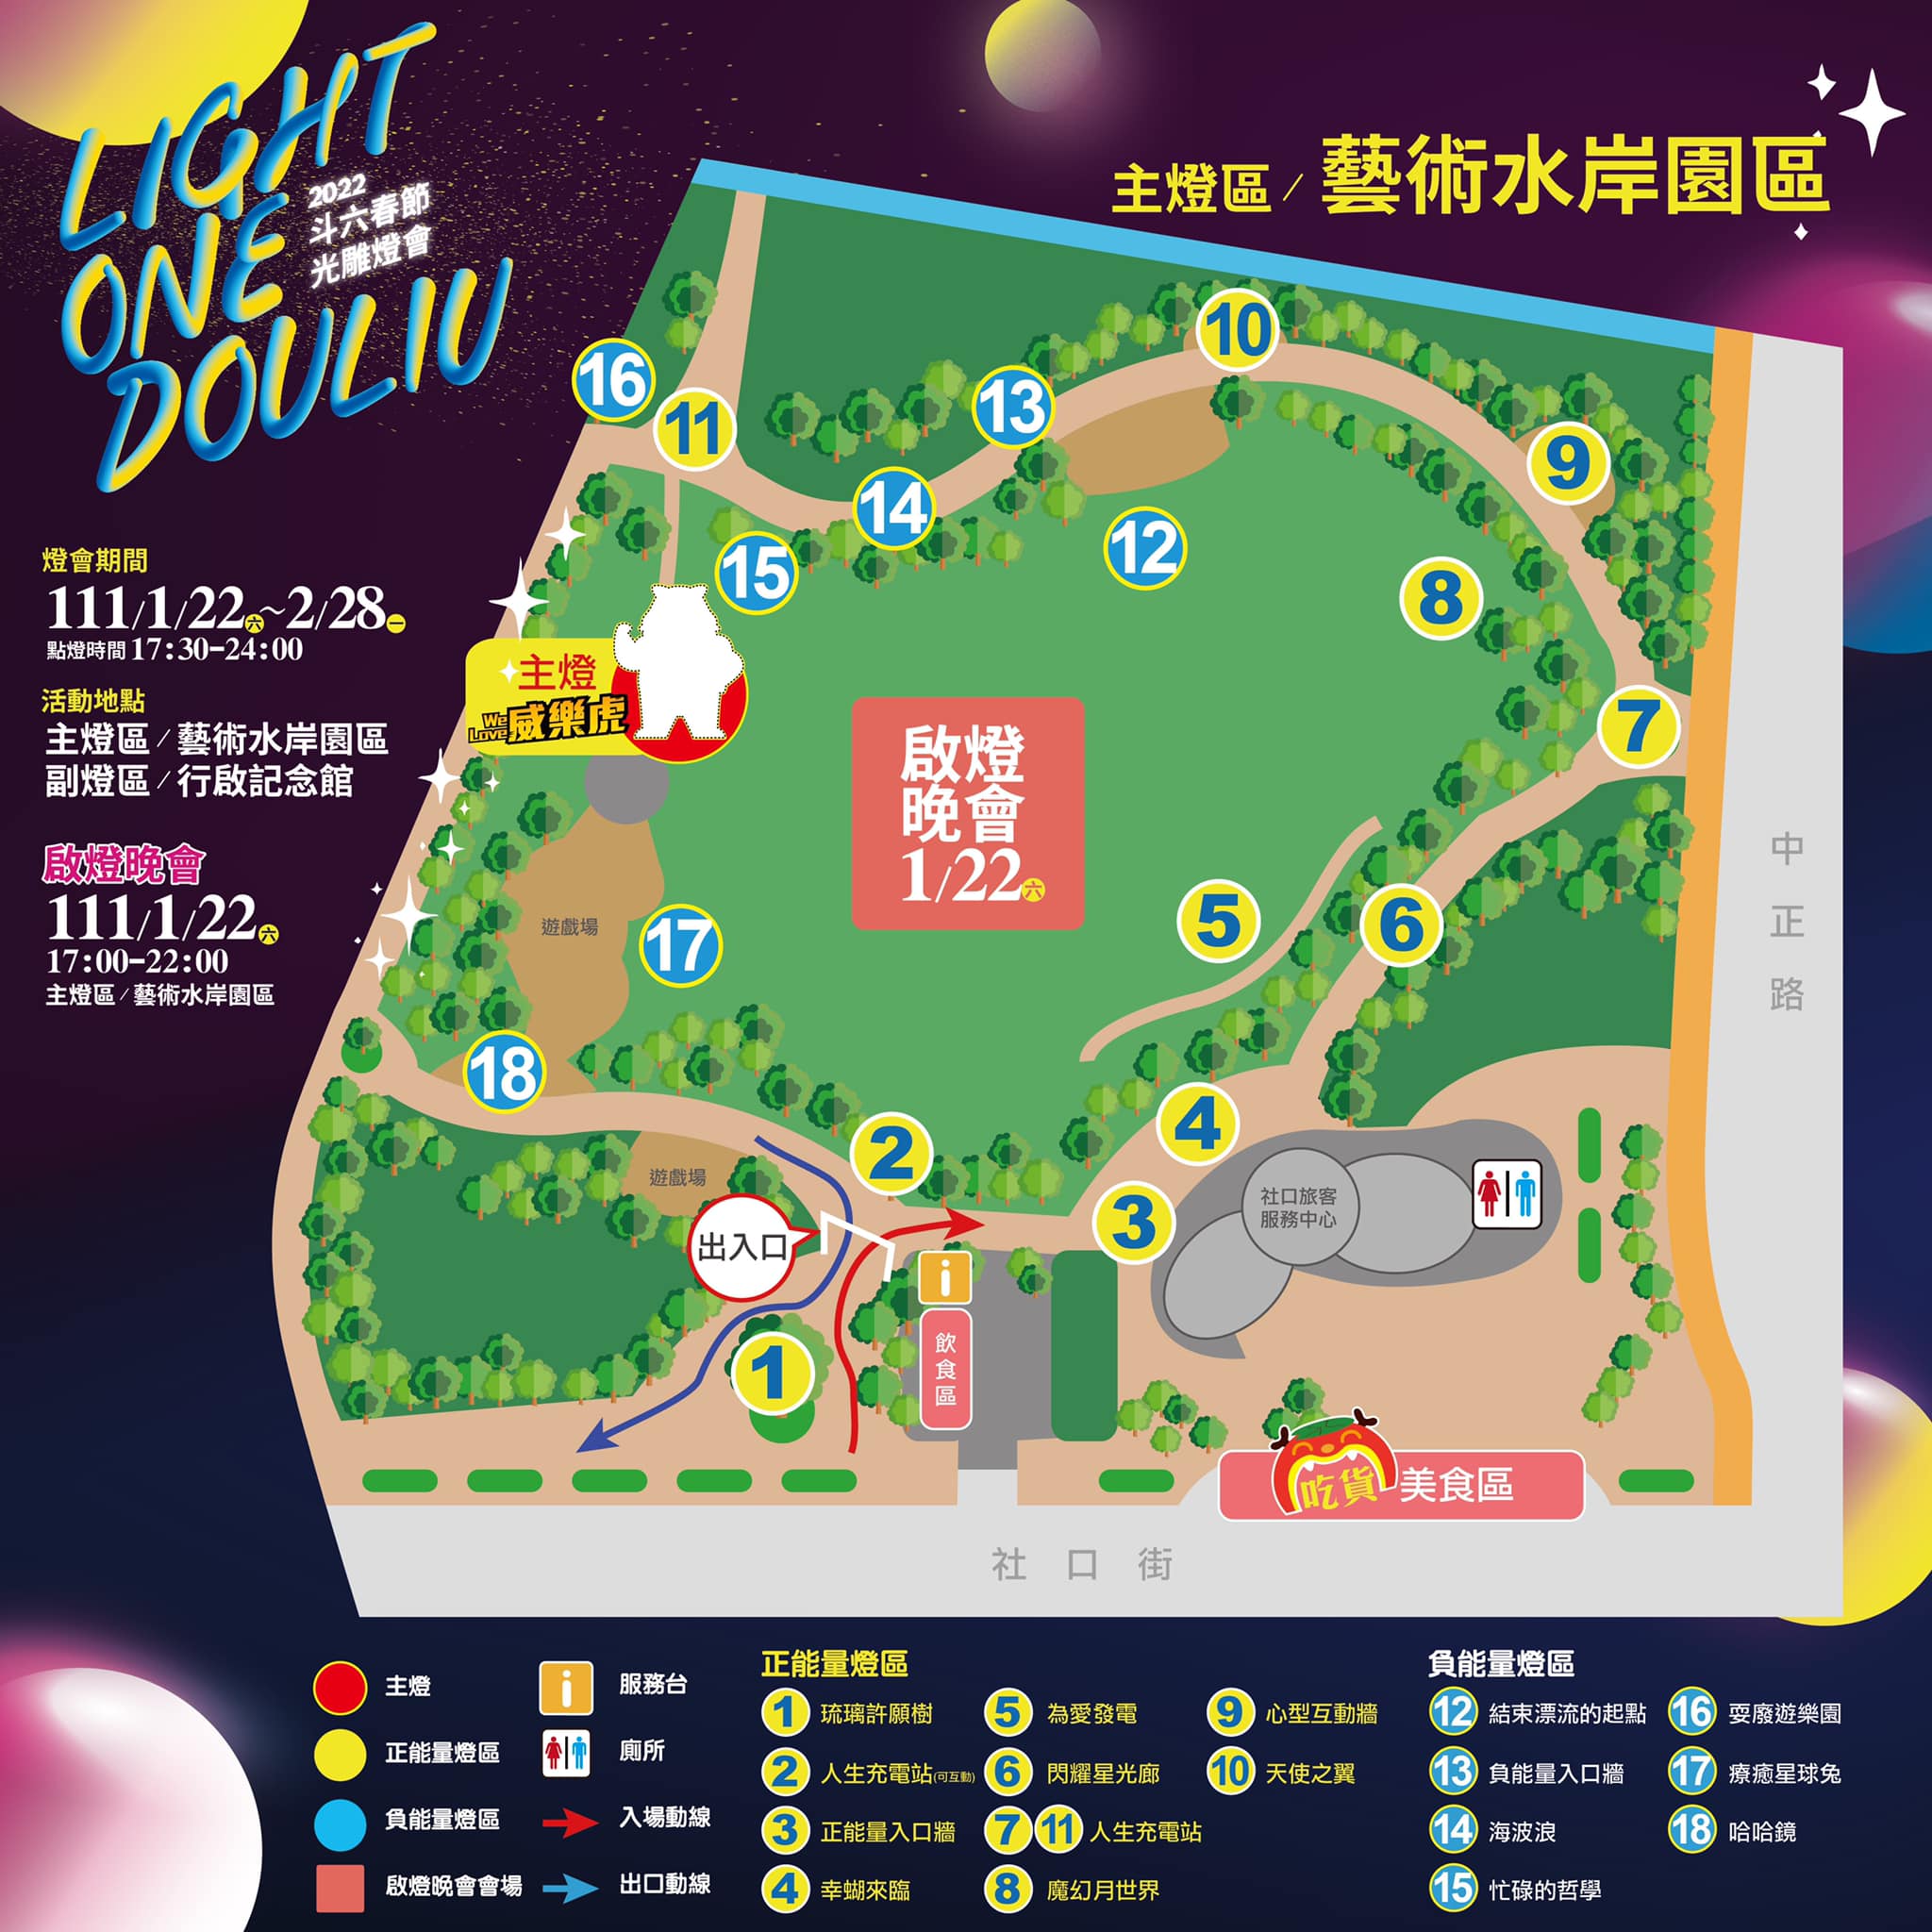 2022斗六燈會｜Light One Douliu 太平老街/藝術水岸園區/行啟記念館燈會(2022/1/22~2/28)